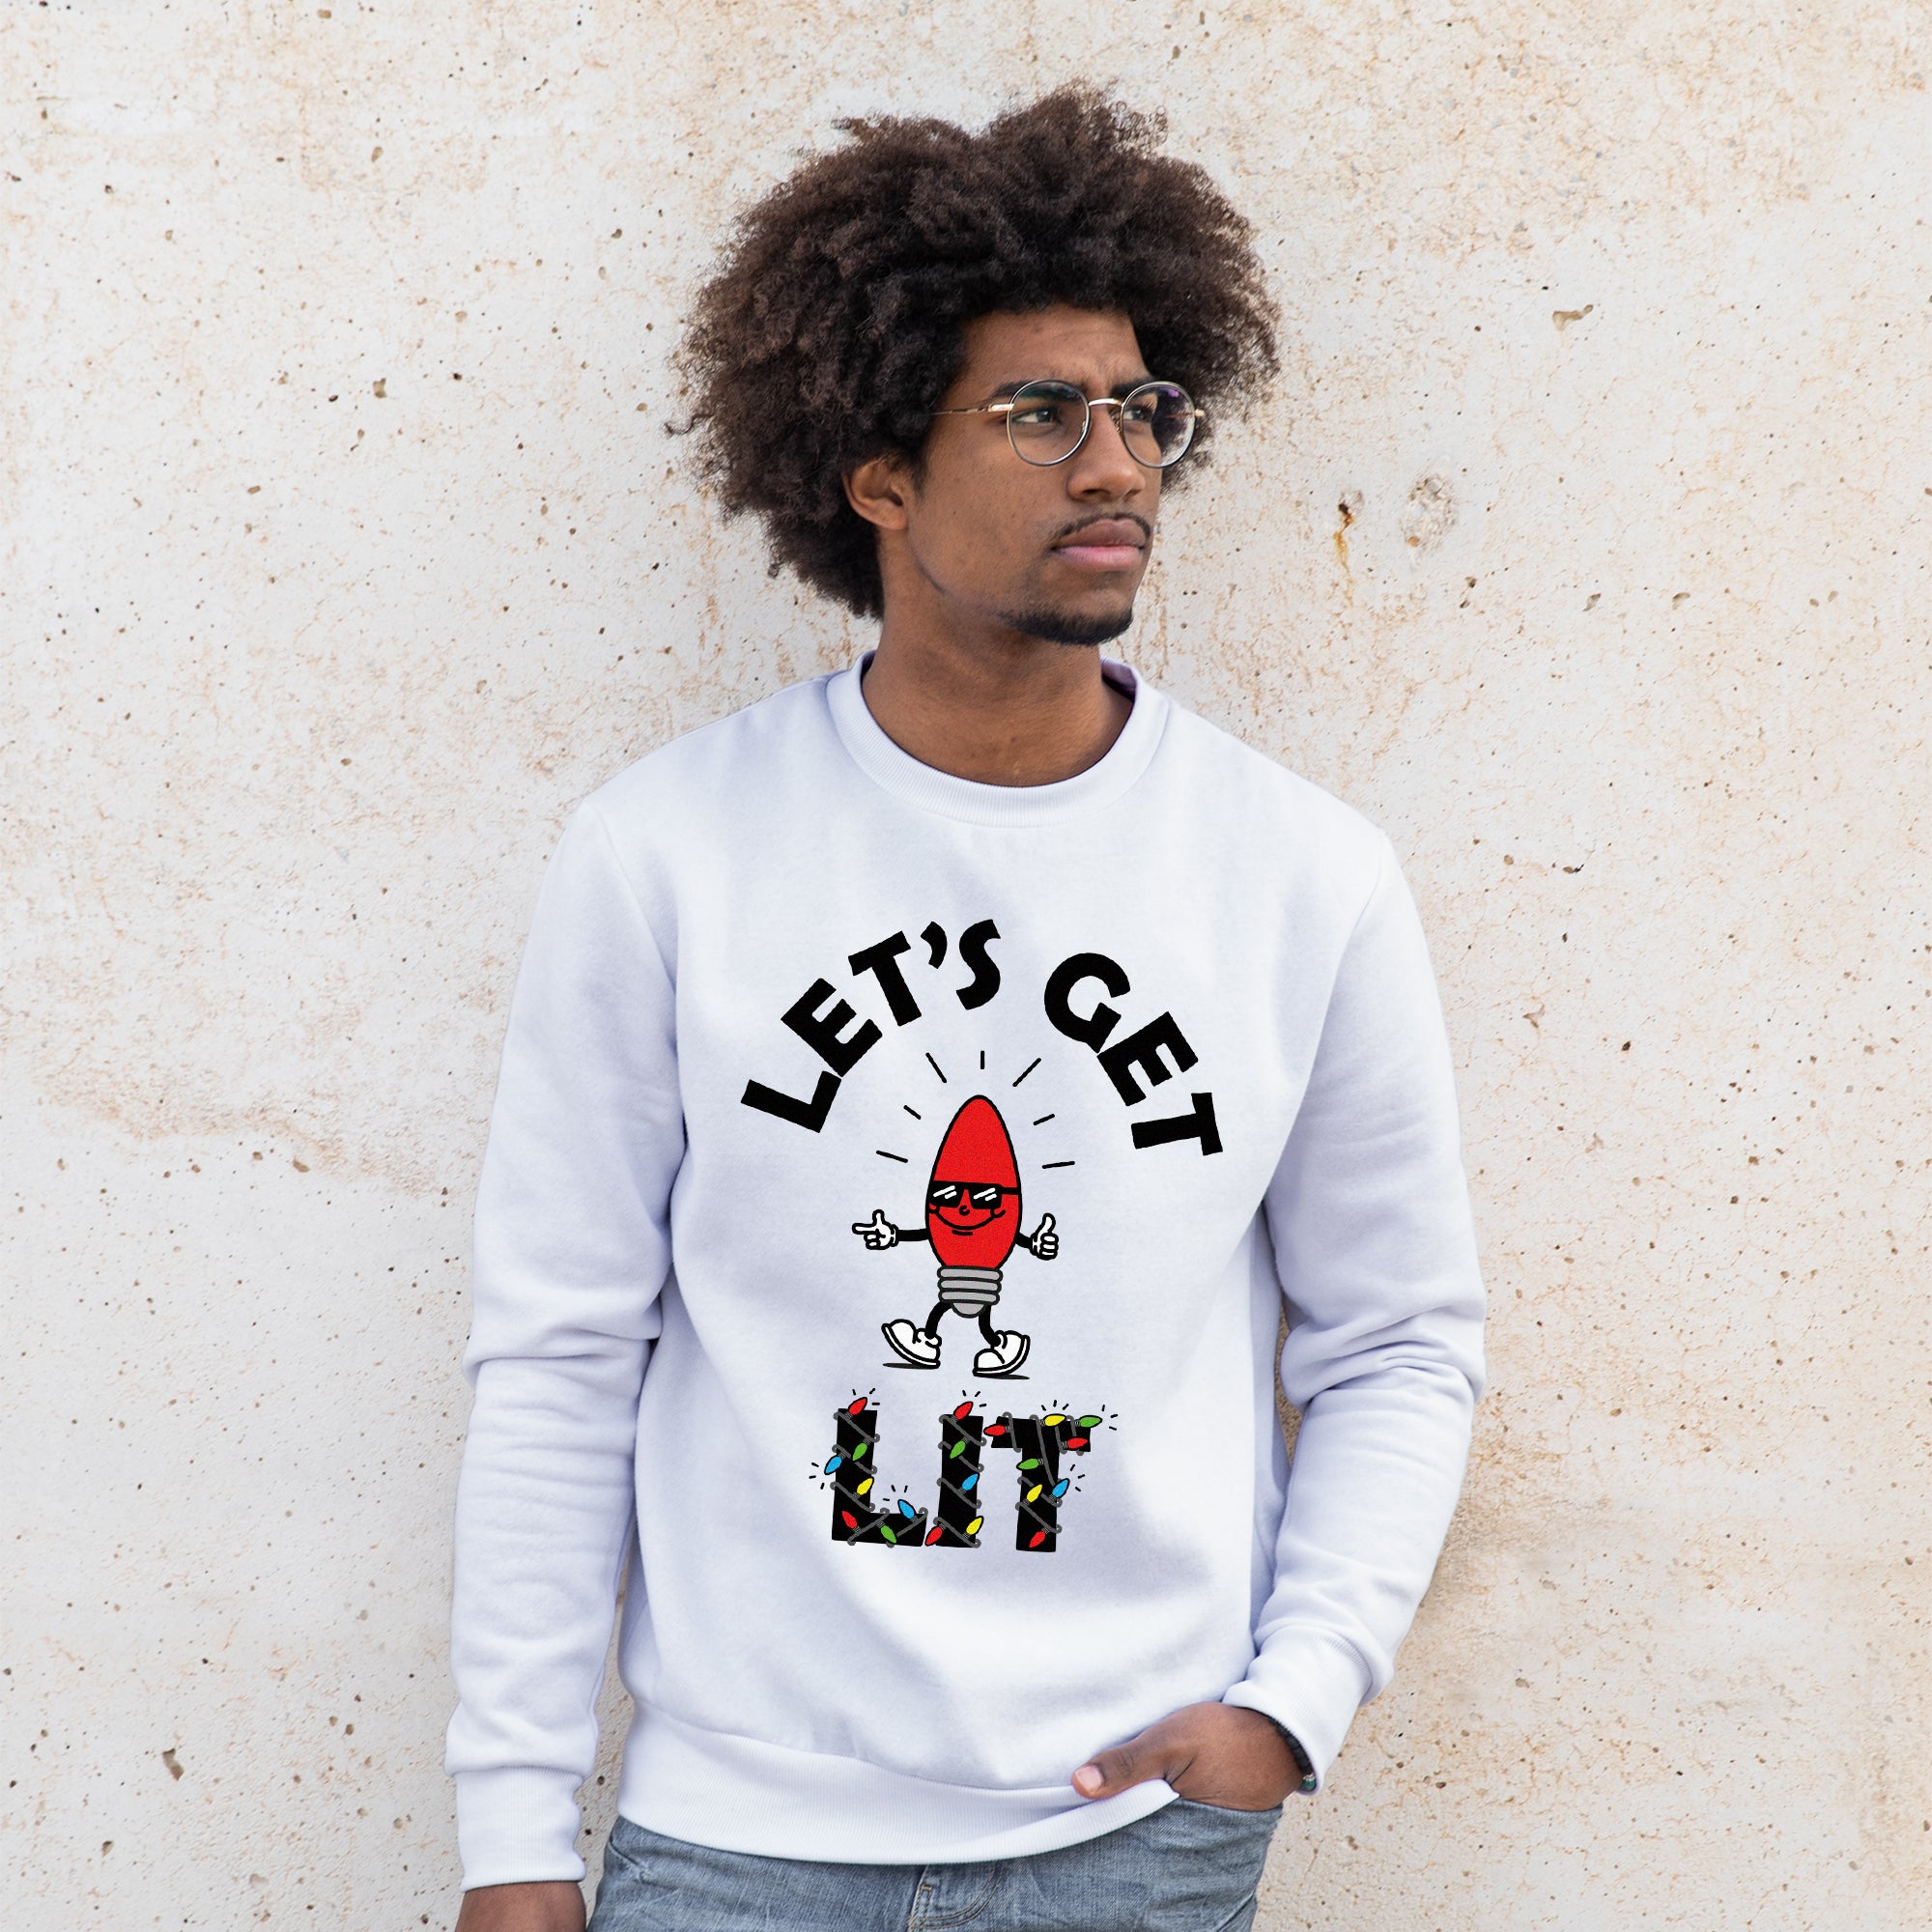 Let's Get Lit - Sweatshirt